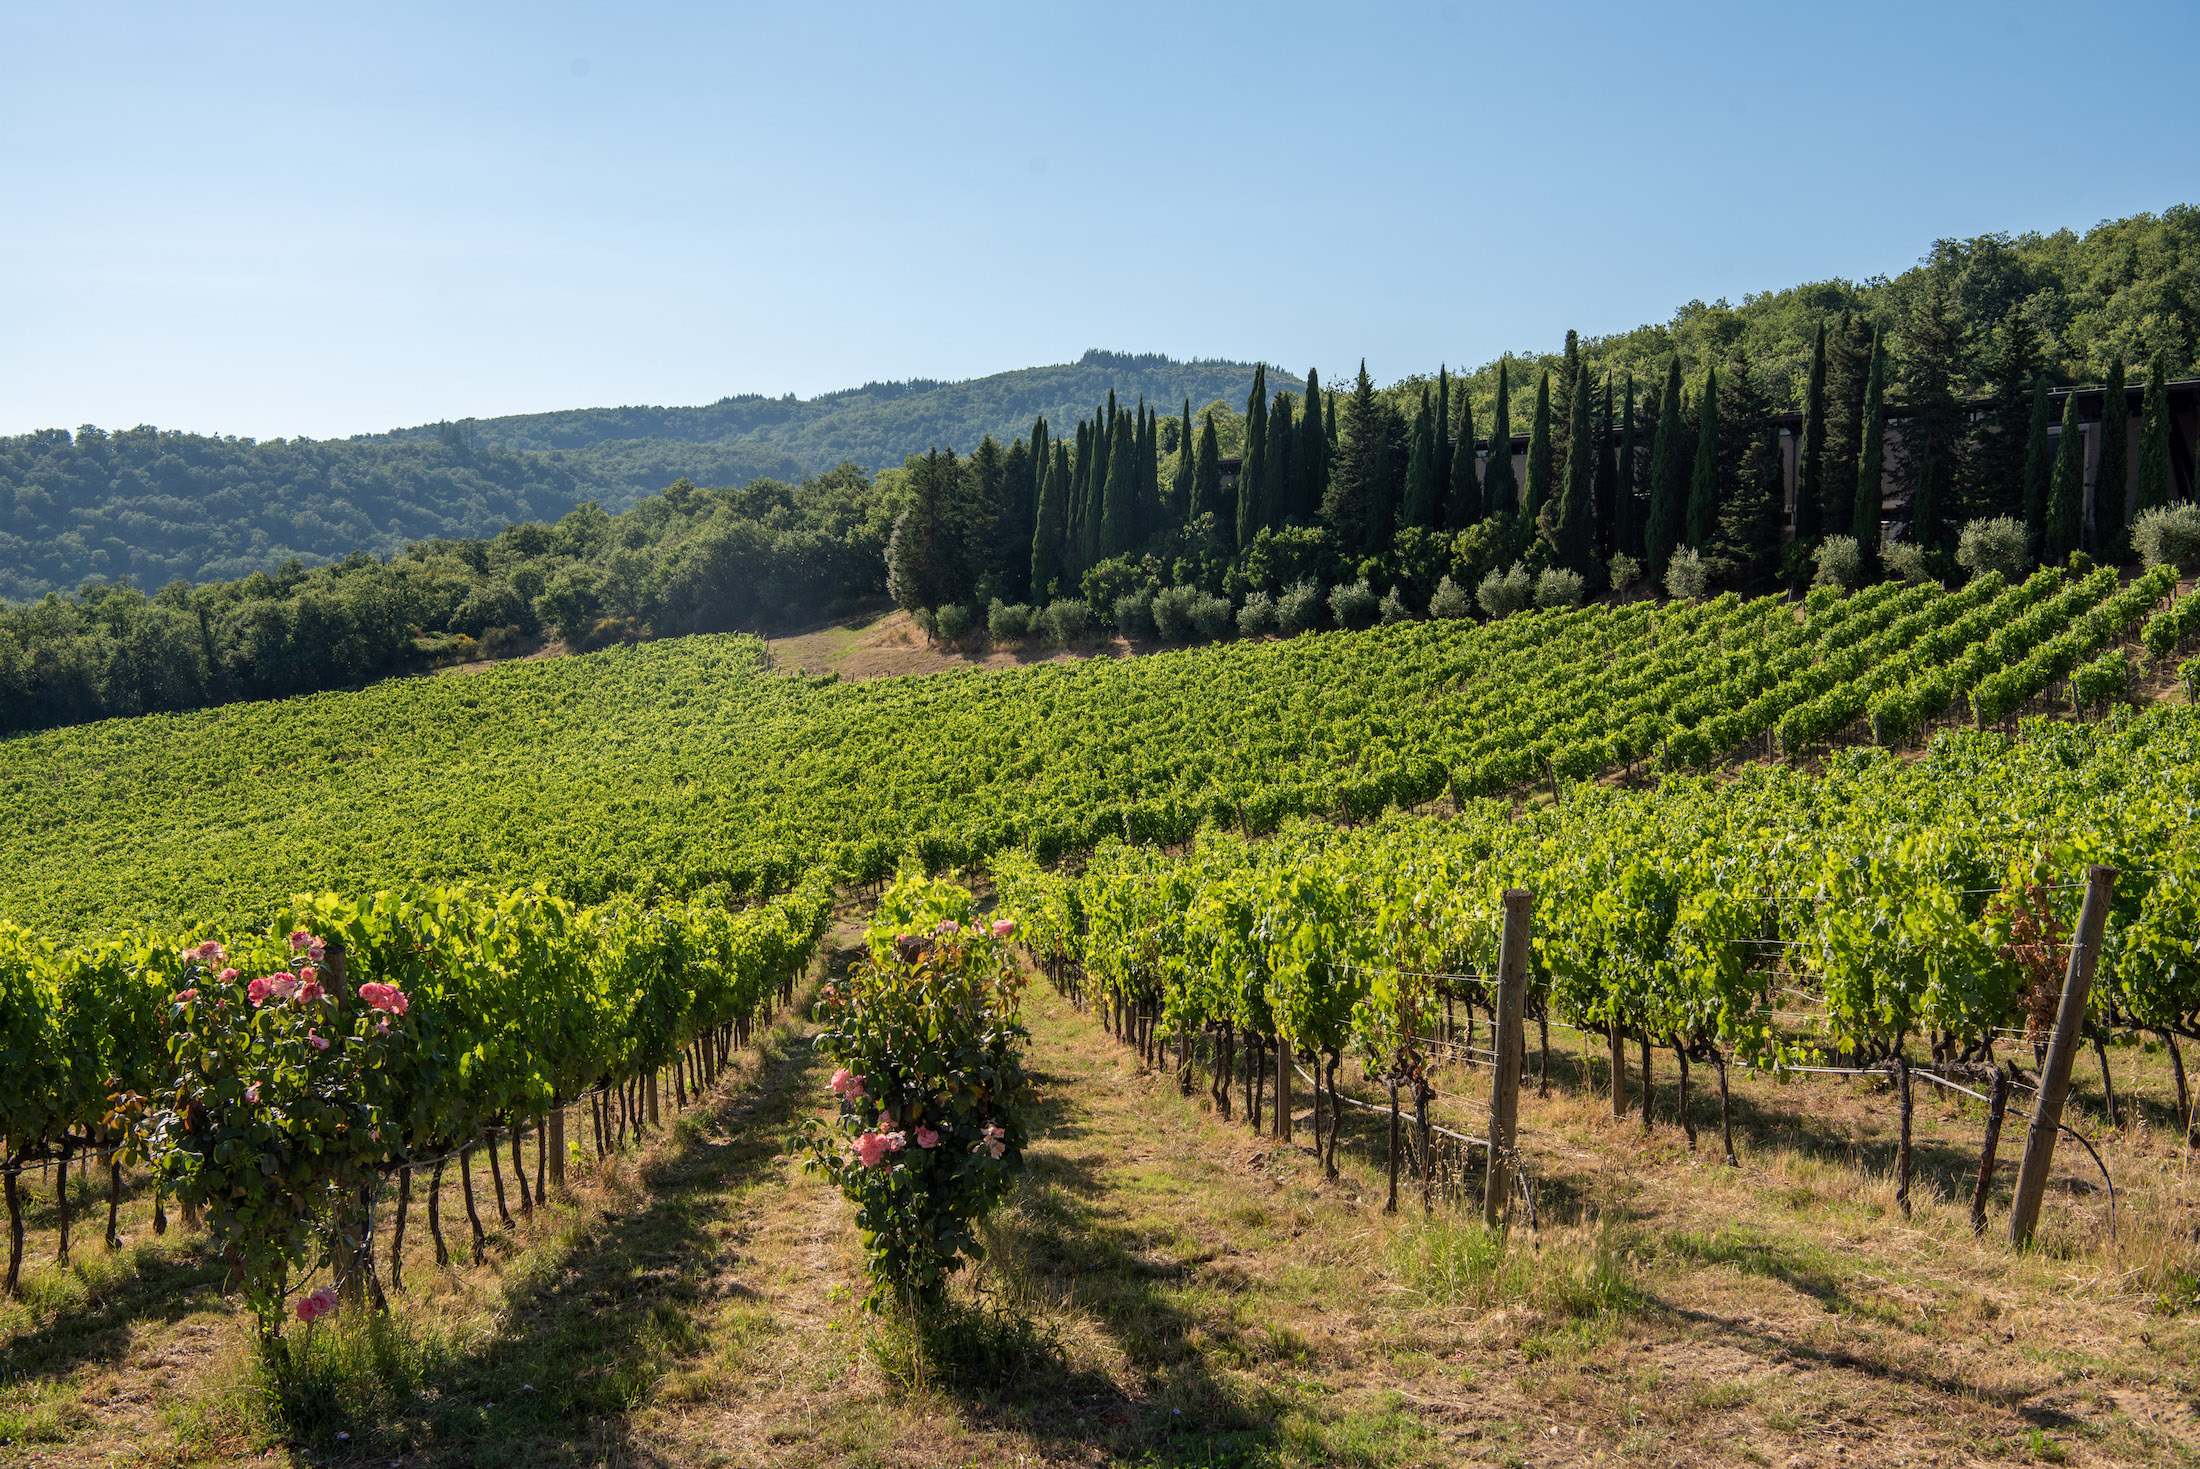 Wijn proeven bij Albola in de Chianti streek met dit fantastische uitzicht